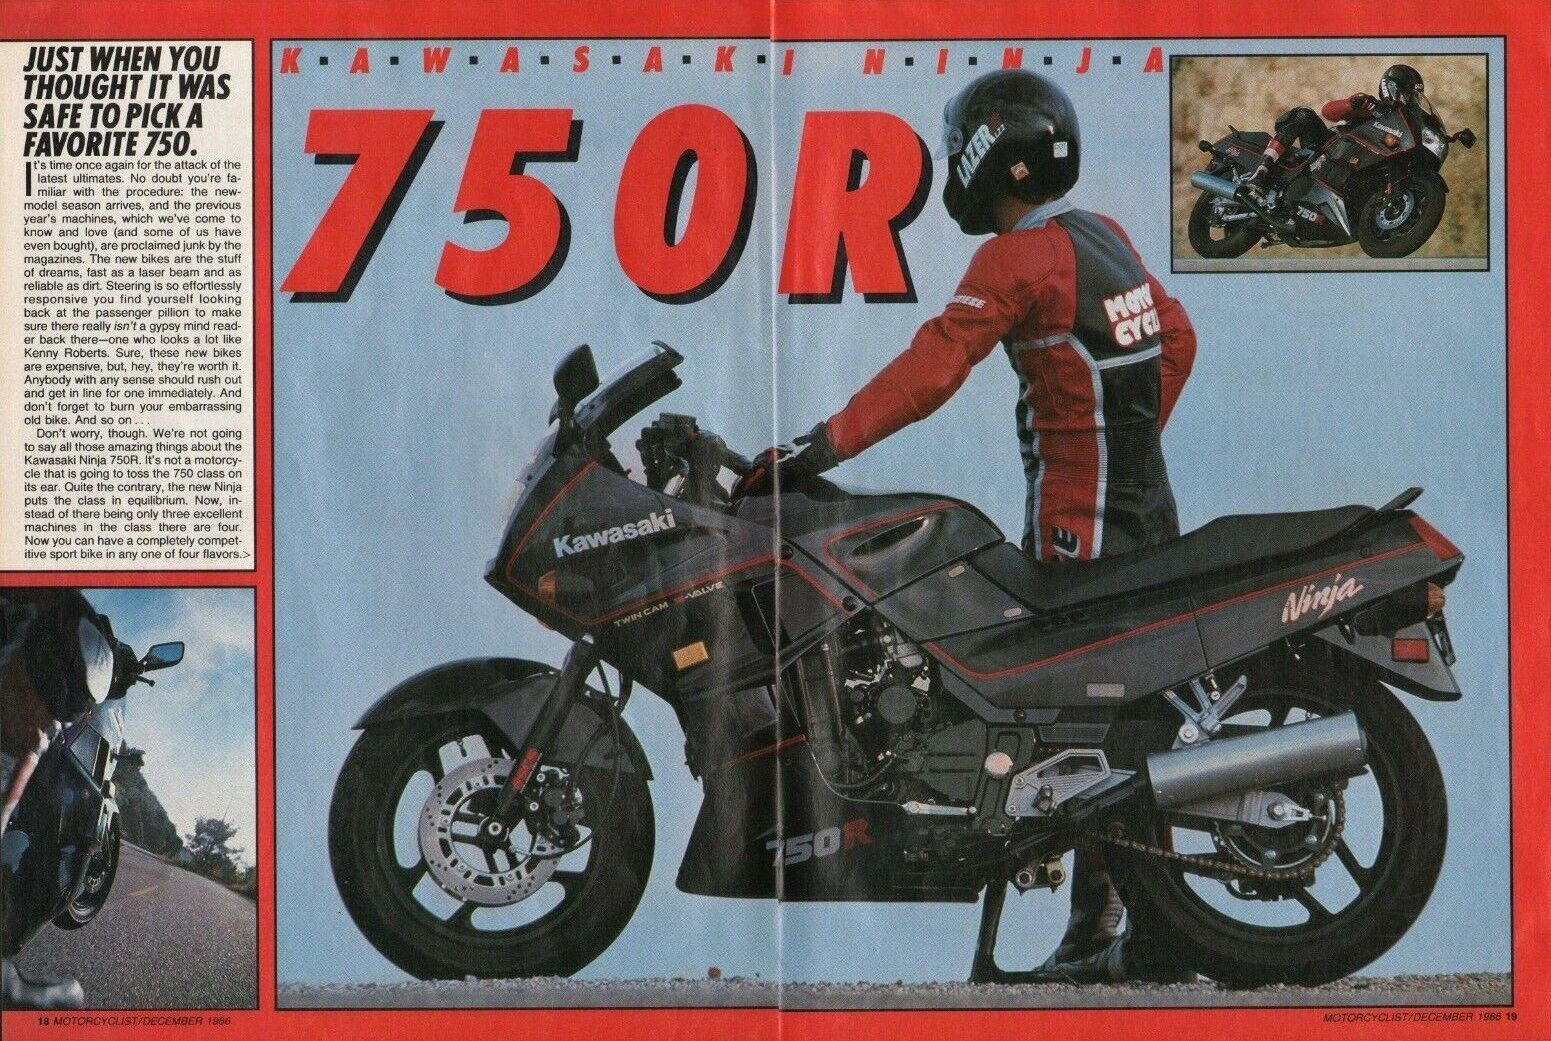 1986 Kawasaki 750R Ninja - 10-Page Vintage Motorcycle Article